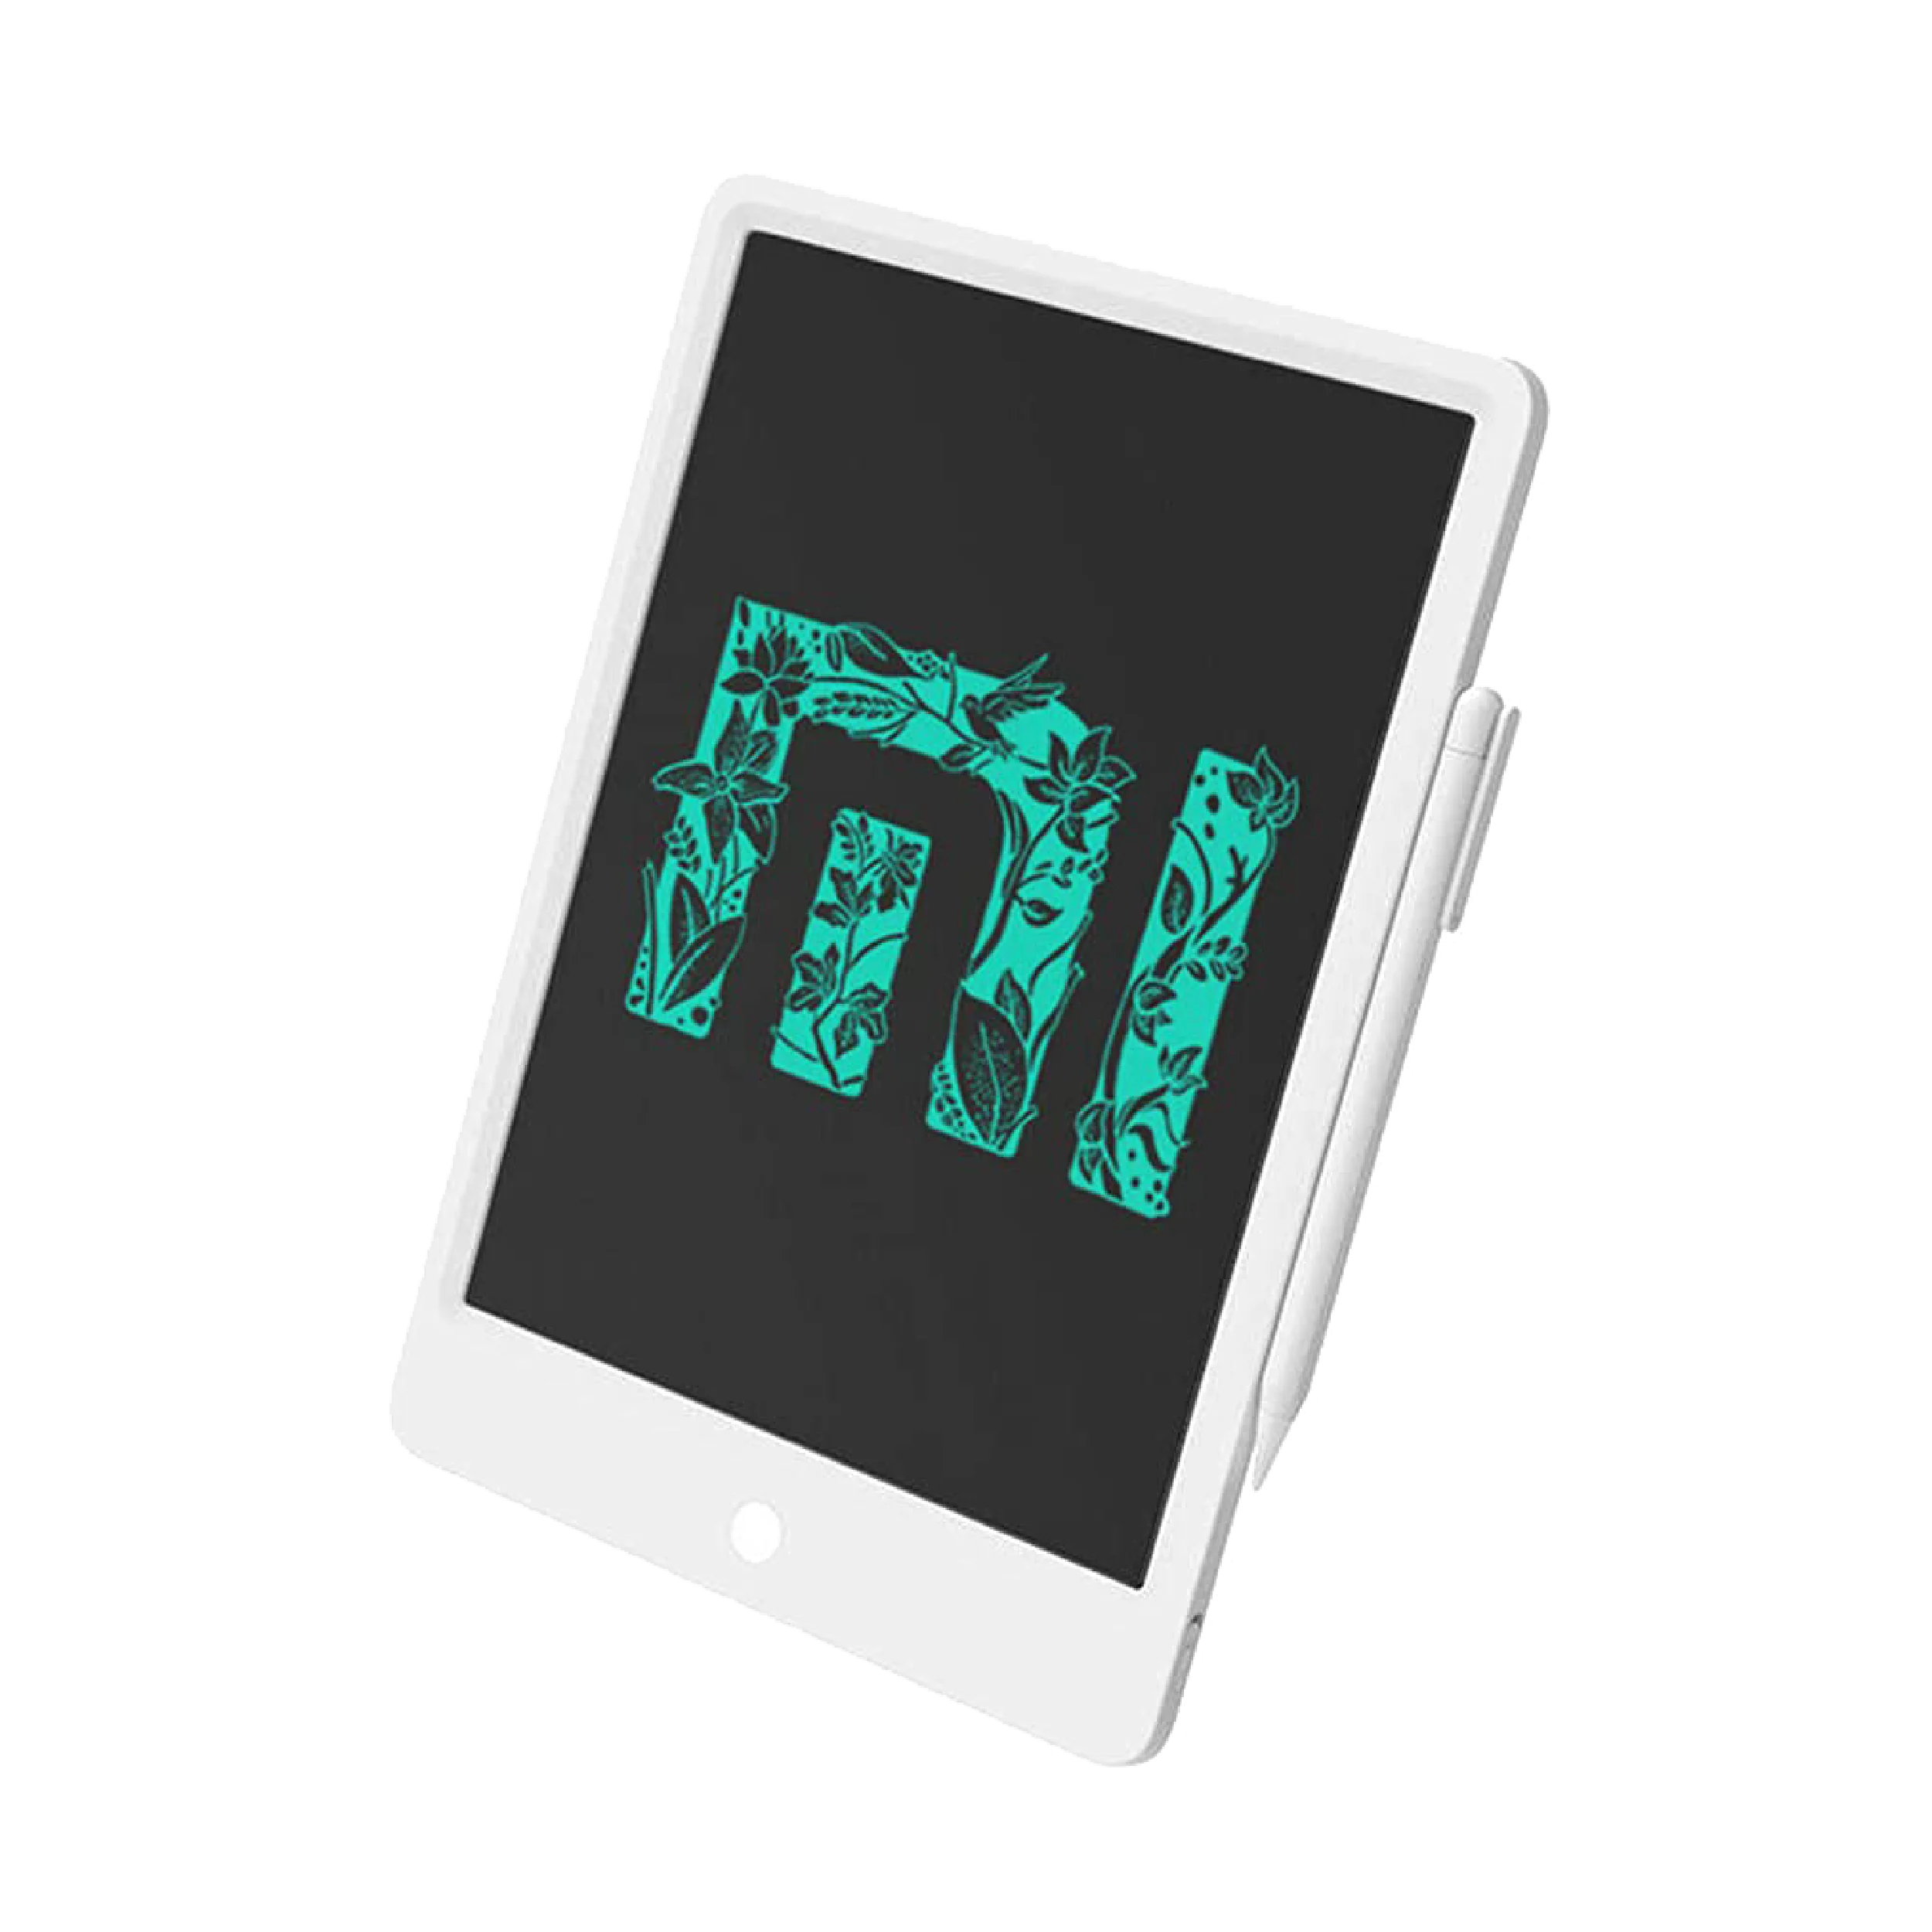 Xiaomi Mi LCD Writing Tablet 13.5